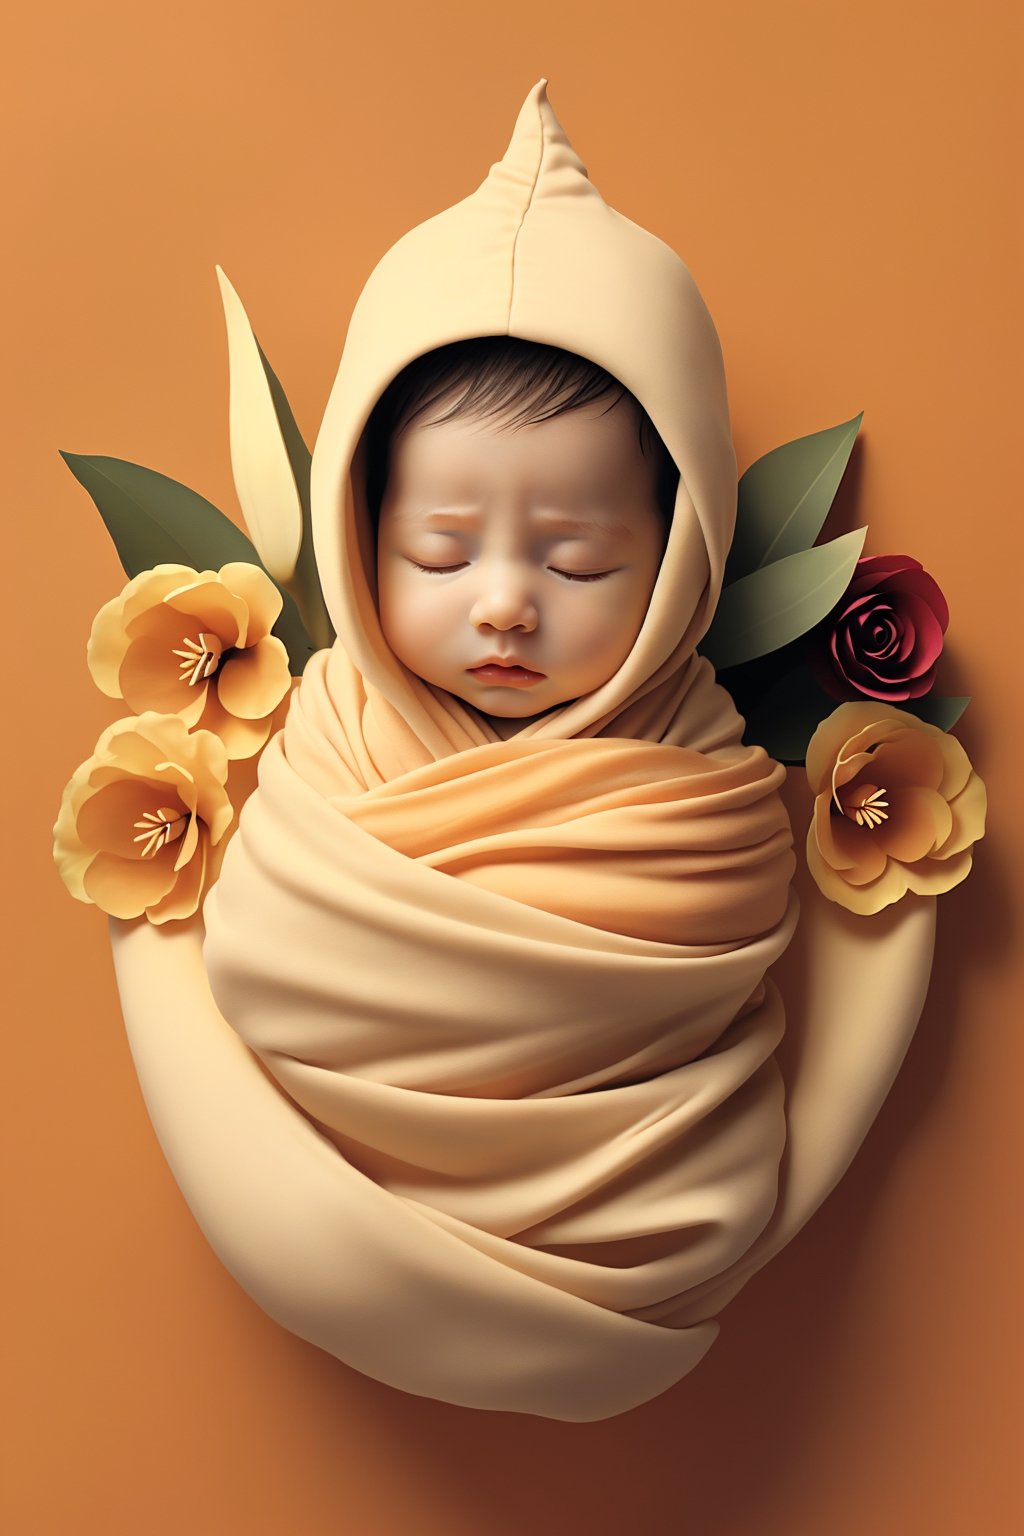 <lora:婴儿写真:0.7>,flower,baby,swaddle,orange background,closed eyes,